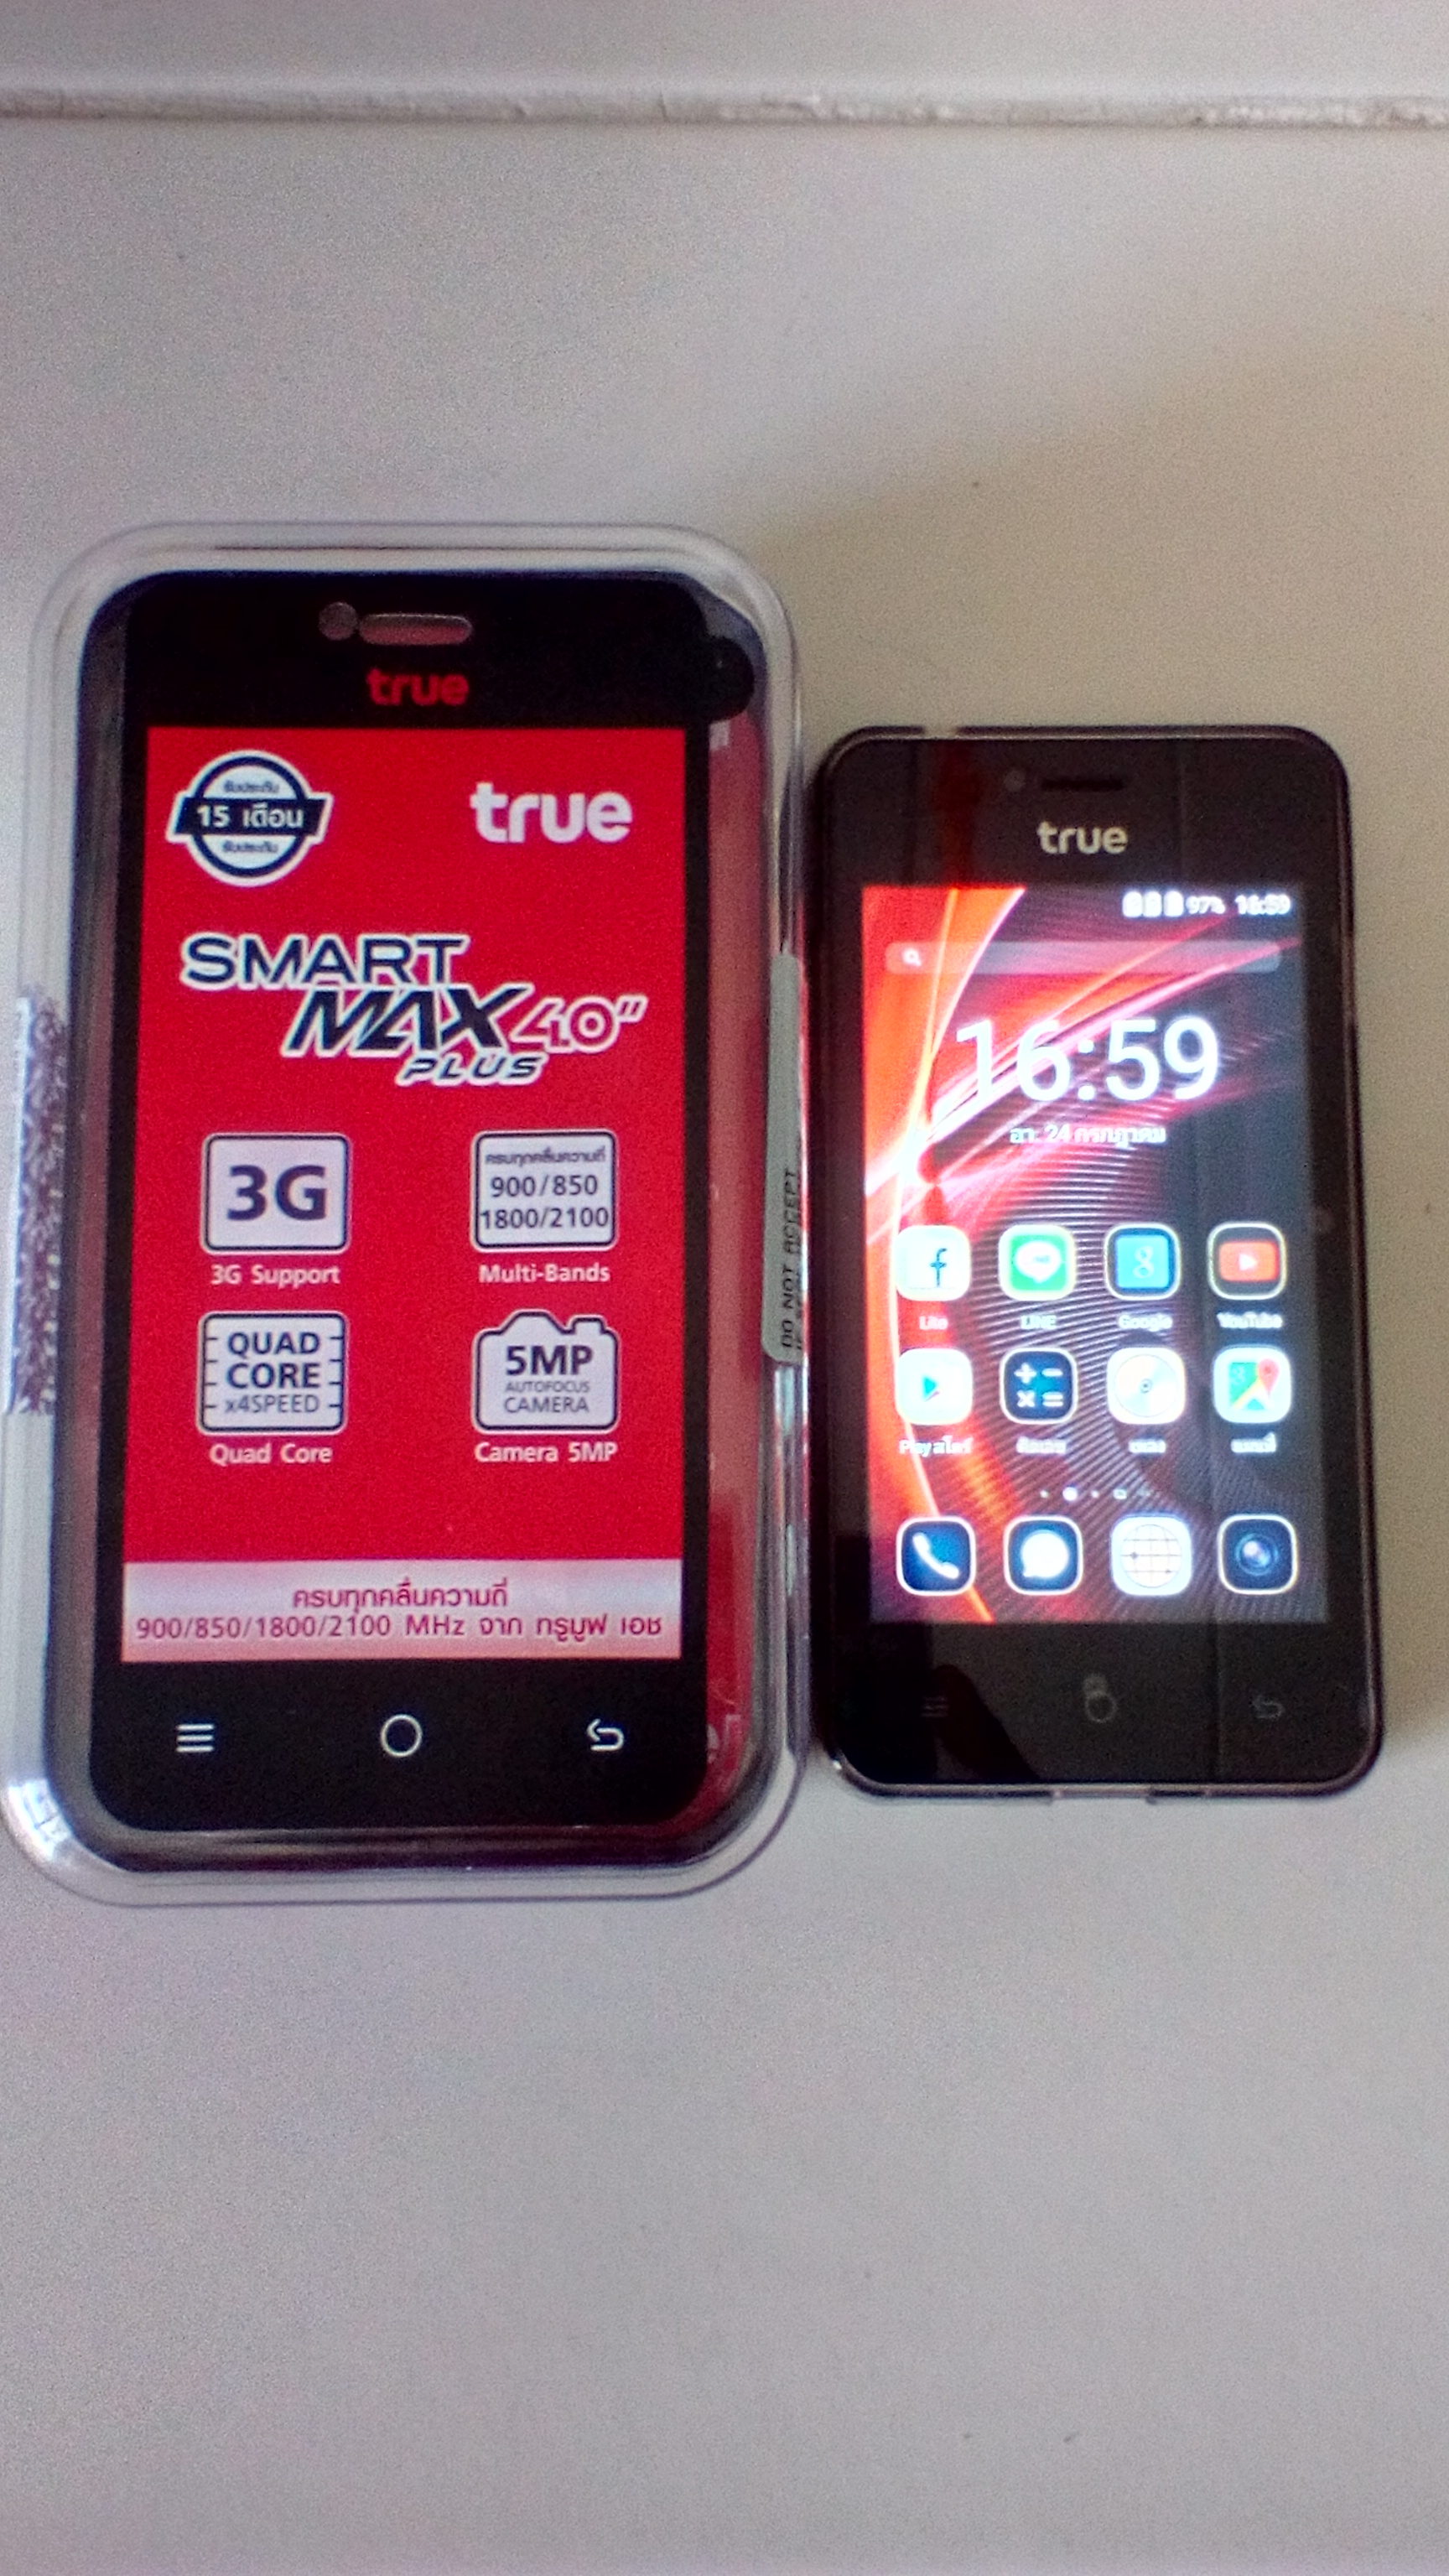 ขายเหมารวมคับ โทรศัพท์มือถือ สมาร์ทโฟน  true Smart 4.0 Plus 3G จอ LCD ACER 15นิ้ว 1300 บาท มีของแถมสุดค้ม รูปที่ 1